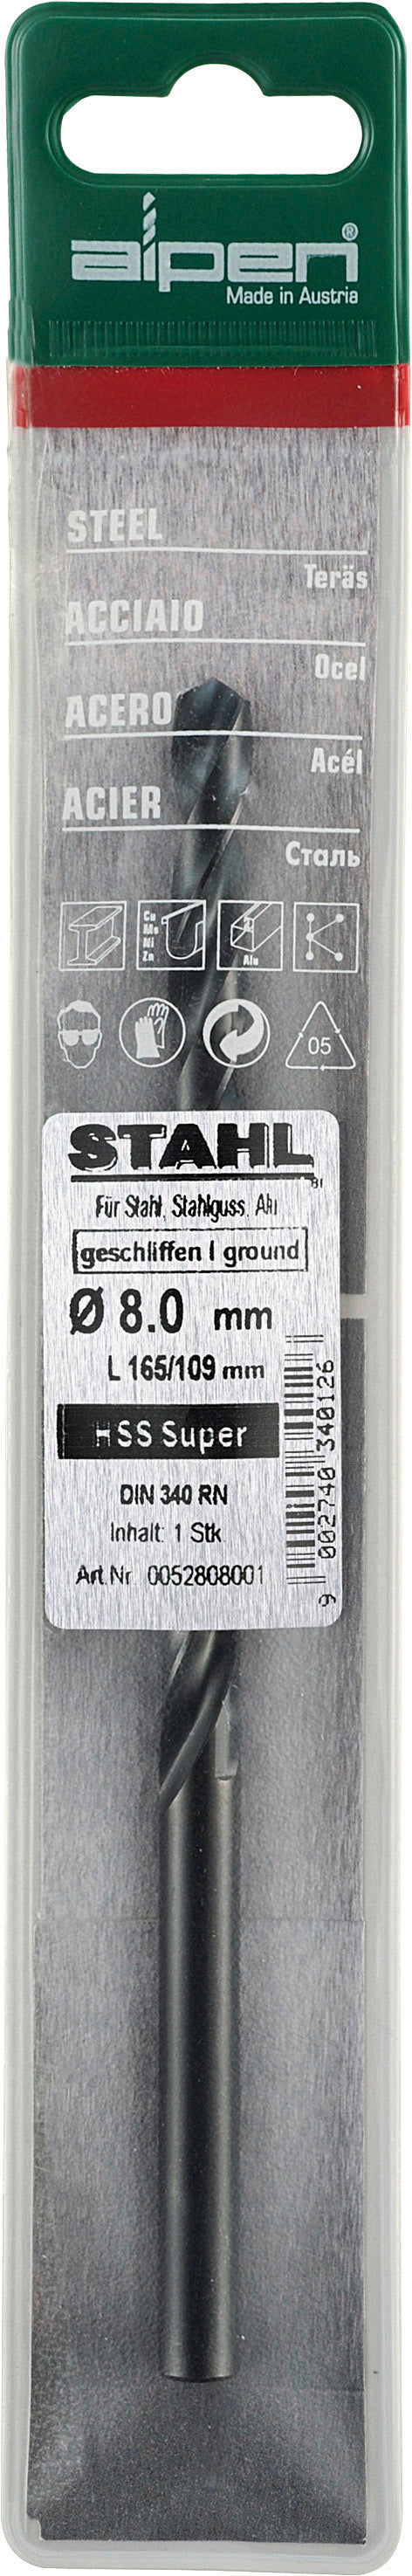 alpen-hss-super-drill-bit-long-3-x-100mm--pouch-alp52803-3